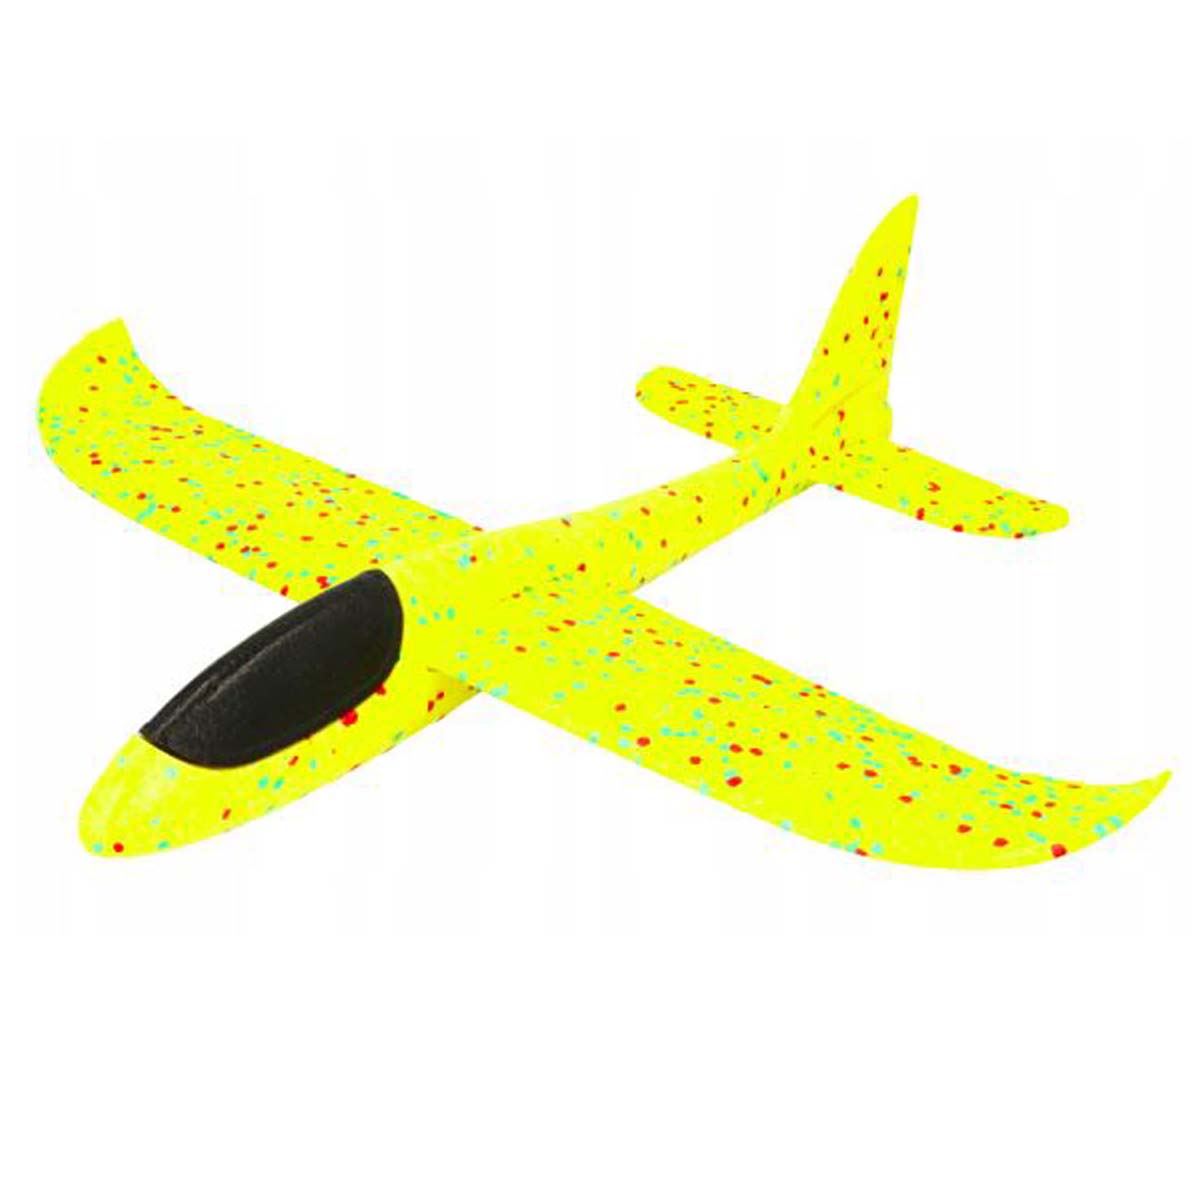 Метательный самолет из пенопласта, 45 см, цвет желтый